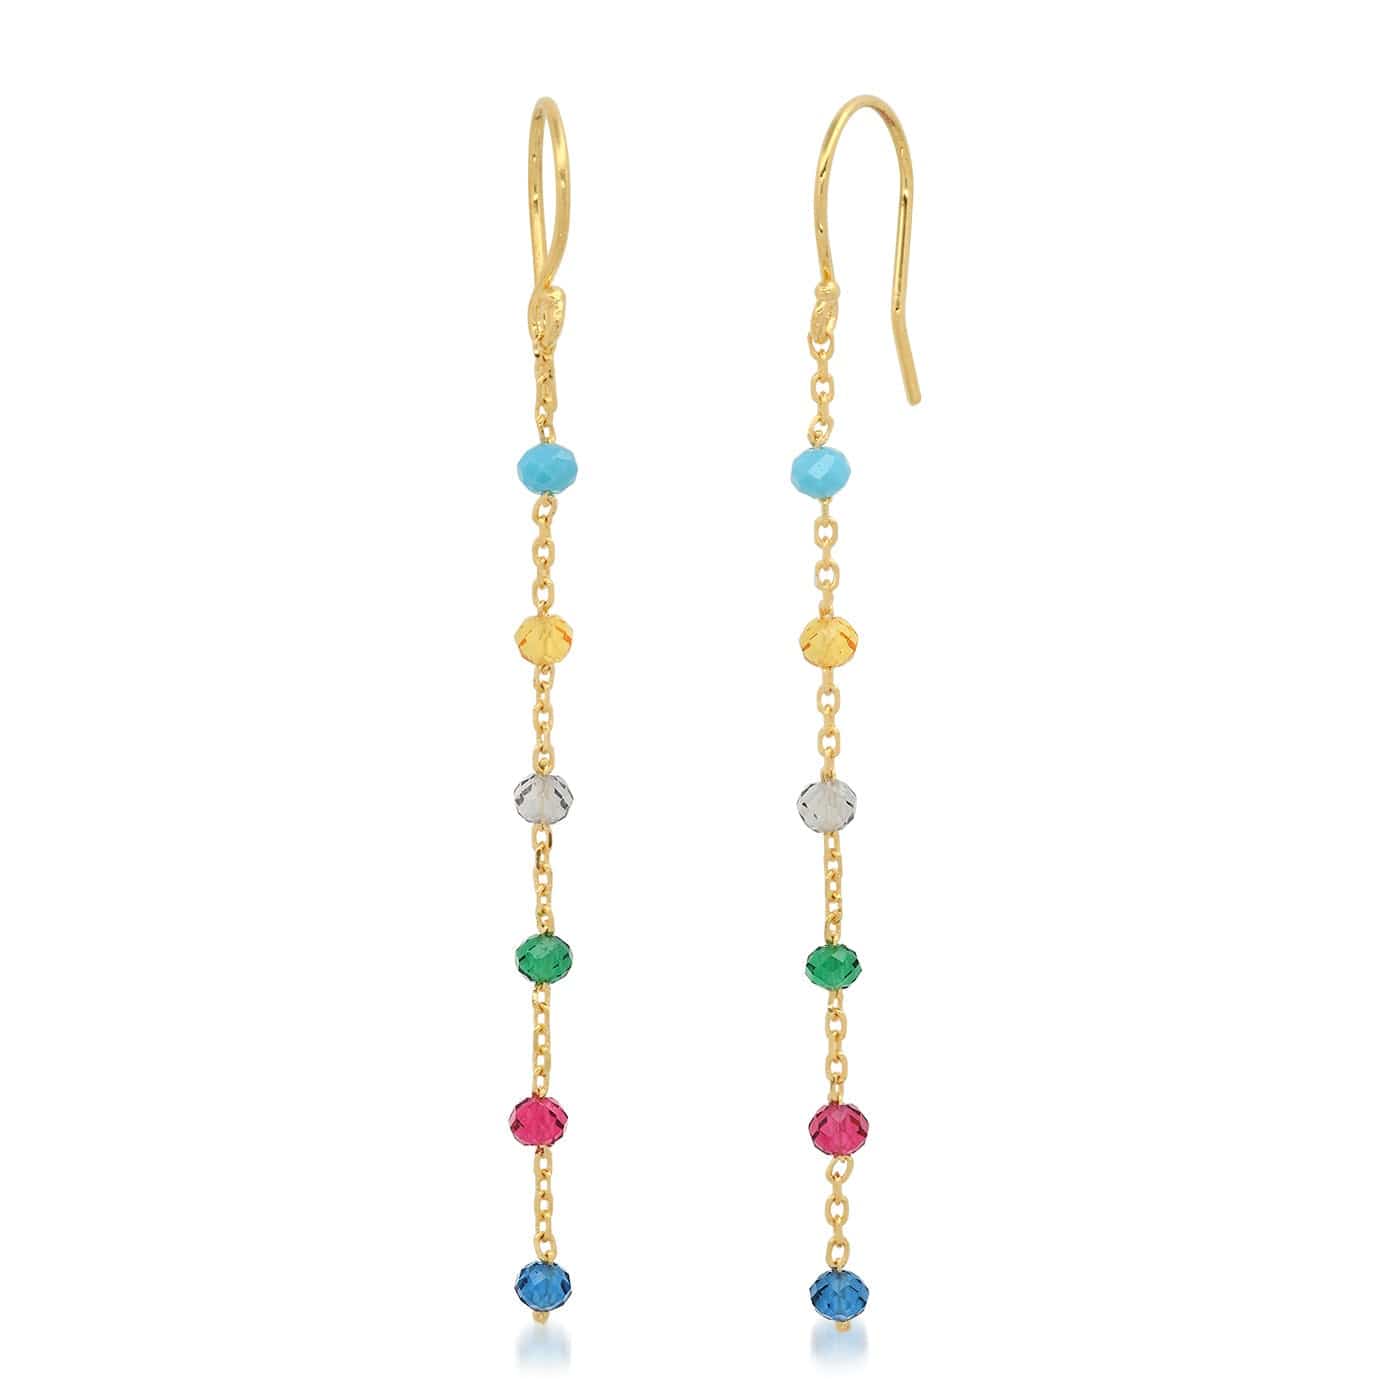 TAI JEWELRY Earrings Multi-Colored CZ Linear Chain Earrings